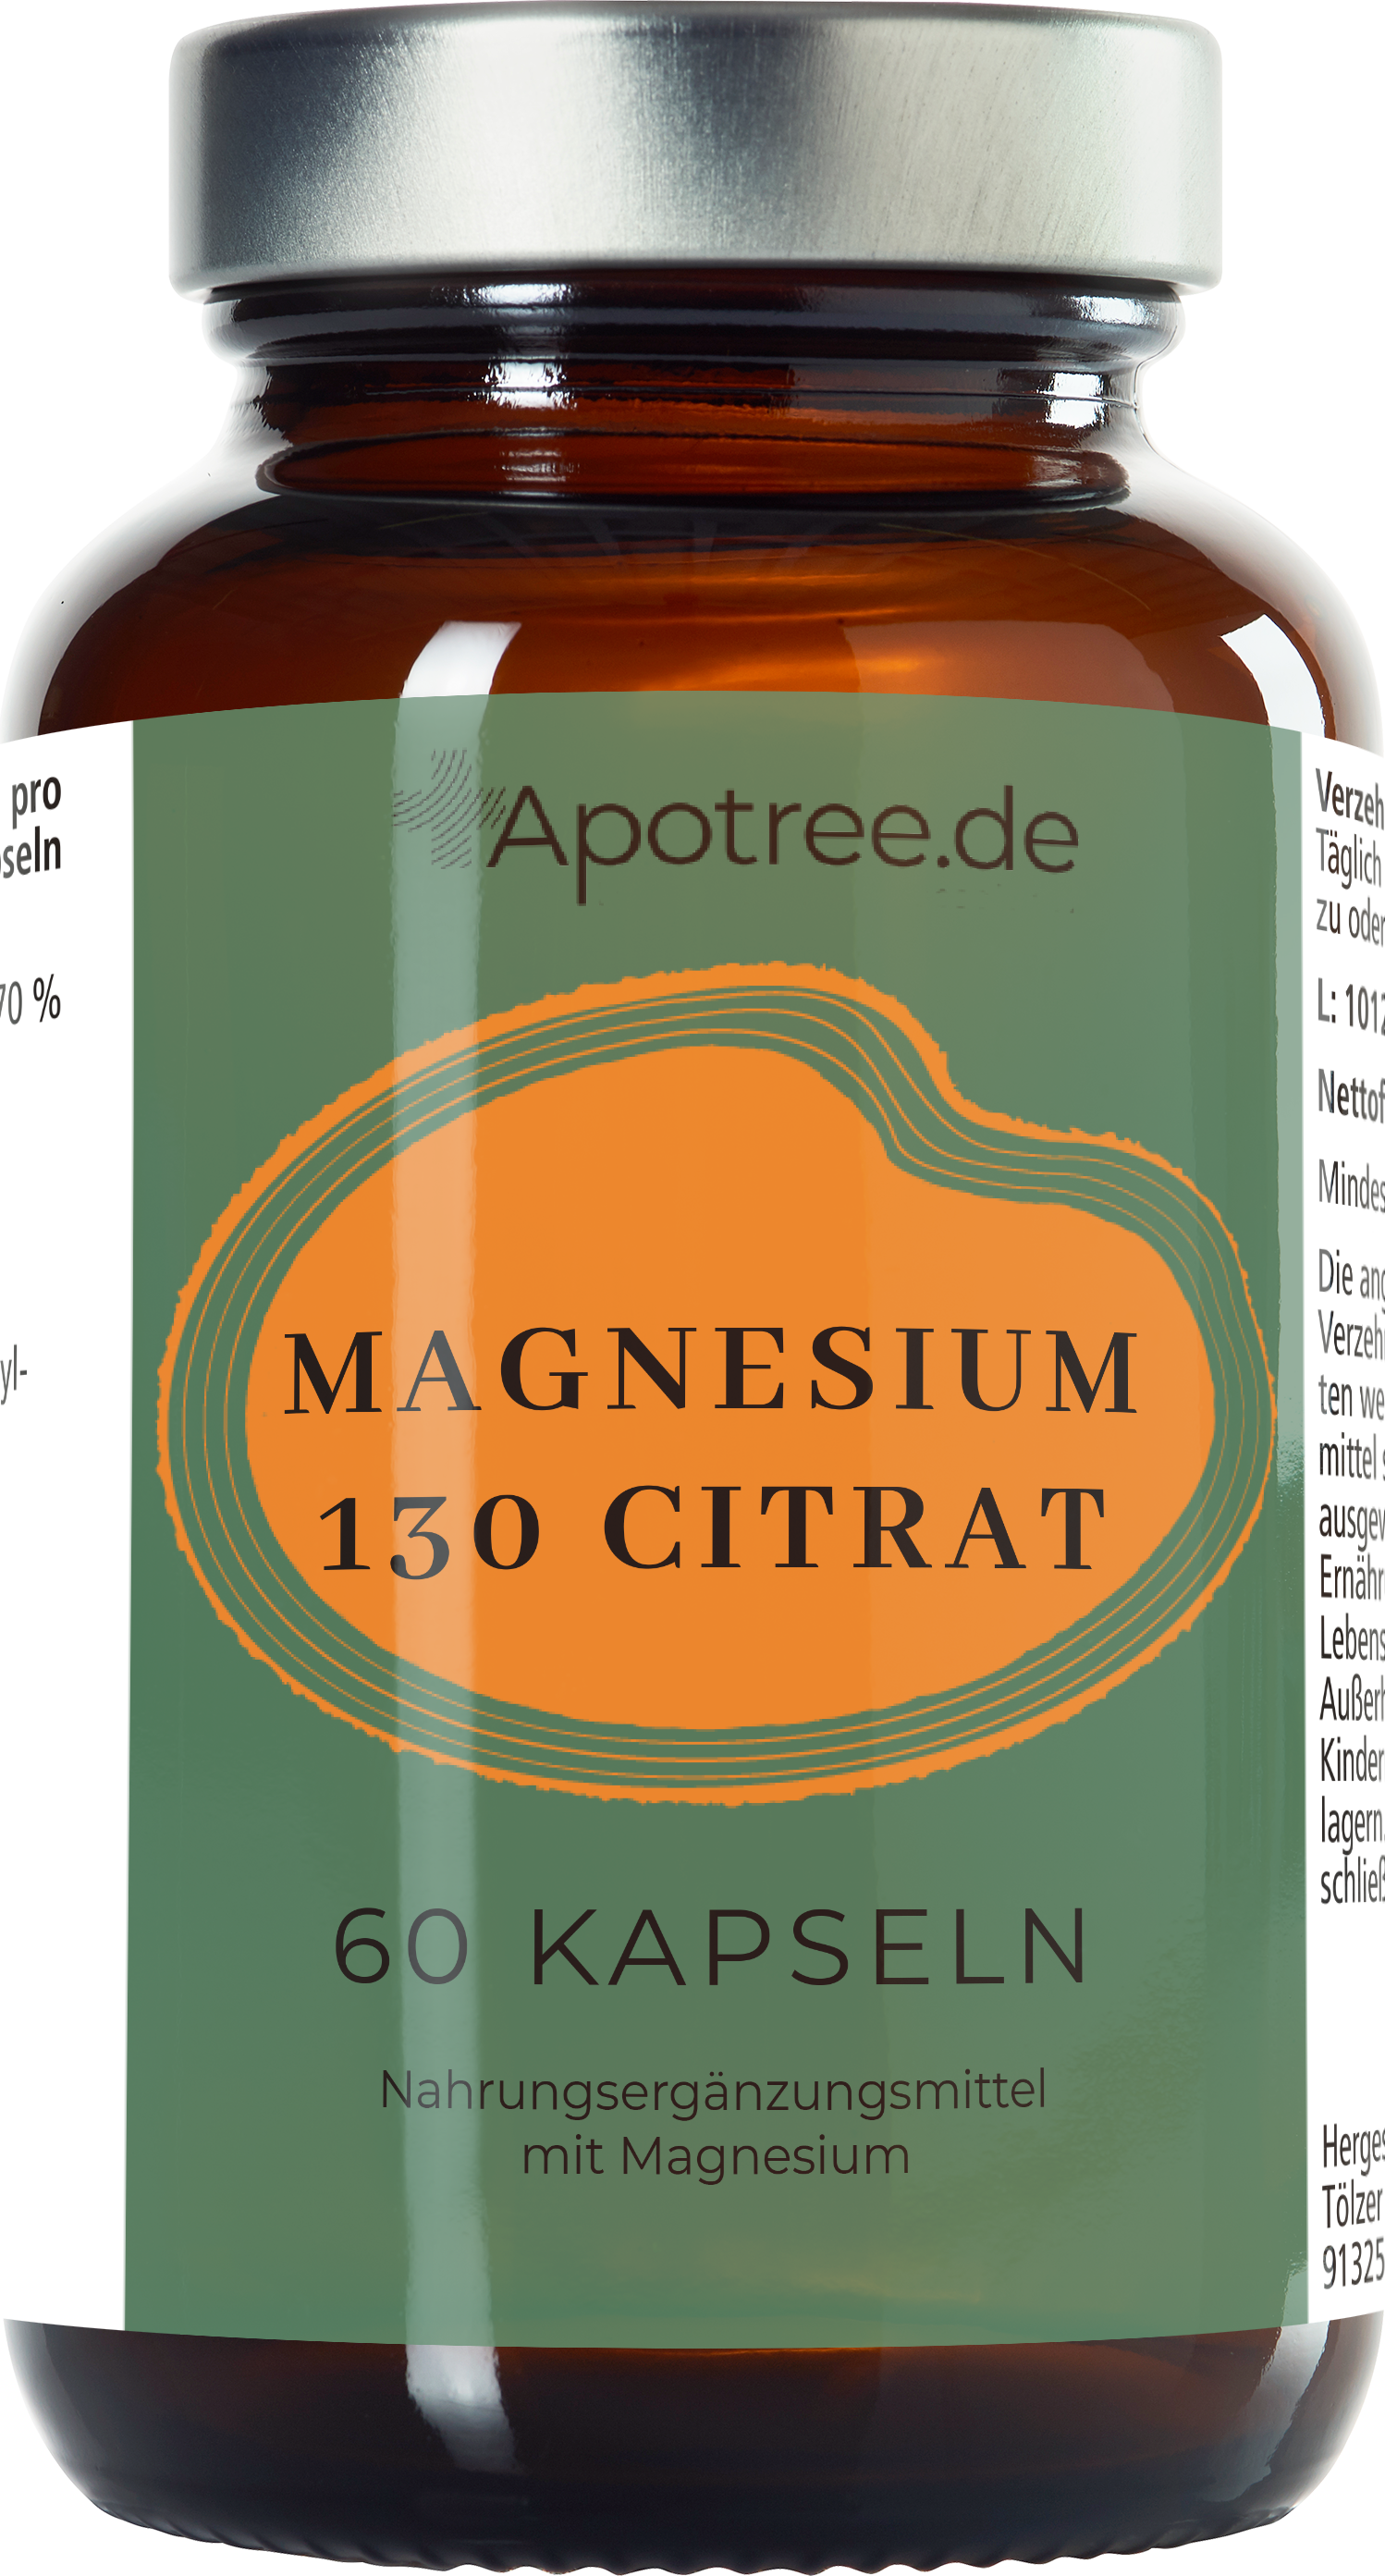 Apotree Magnesium 130 Citrat